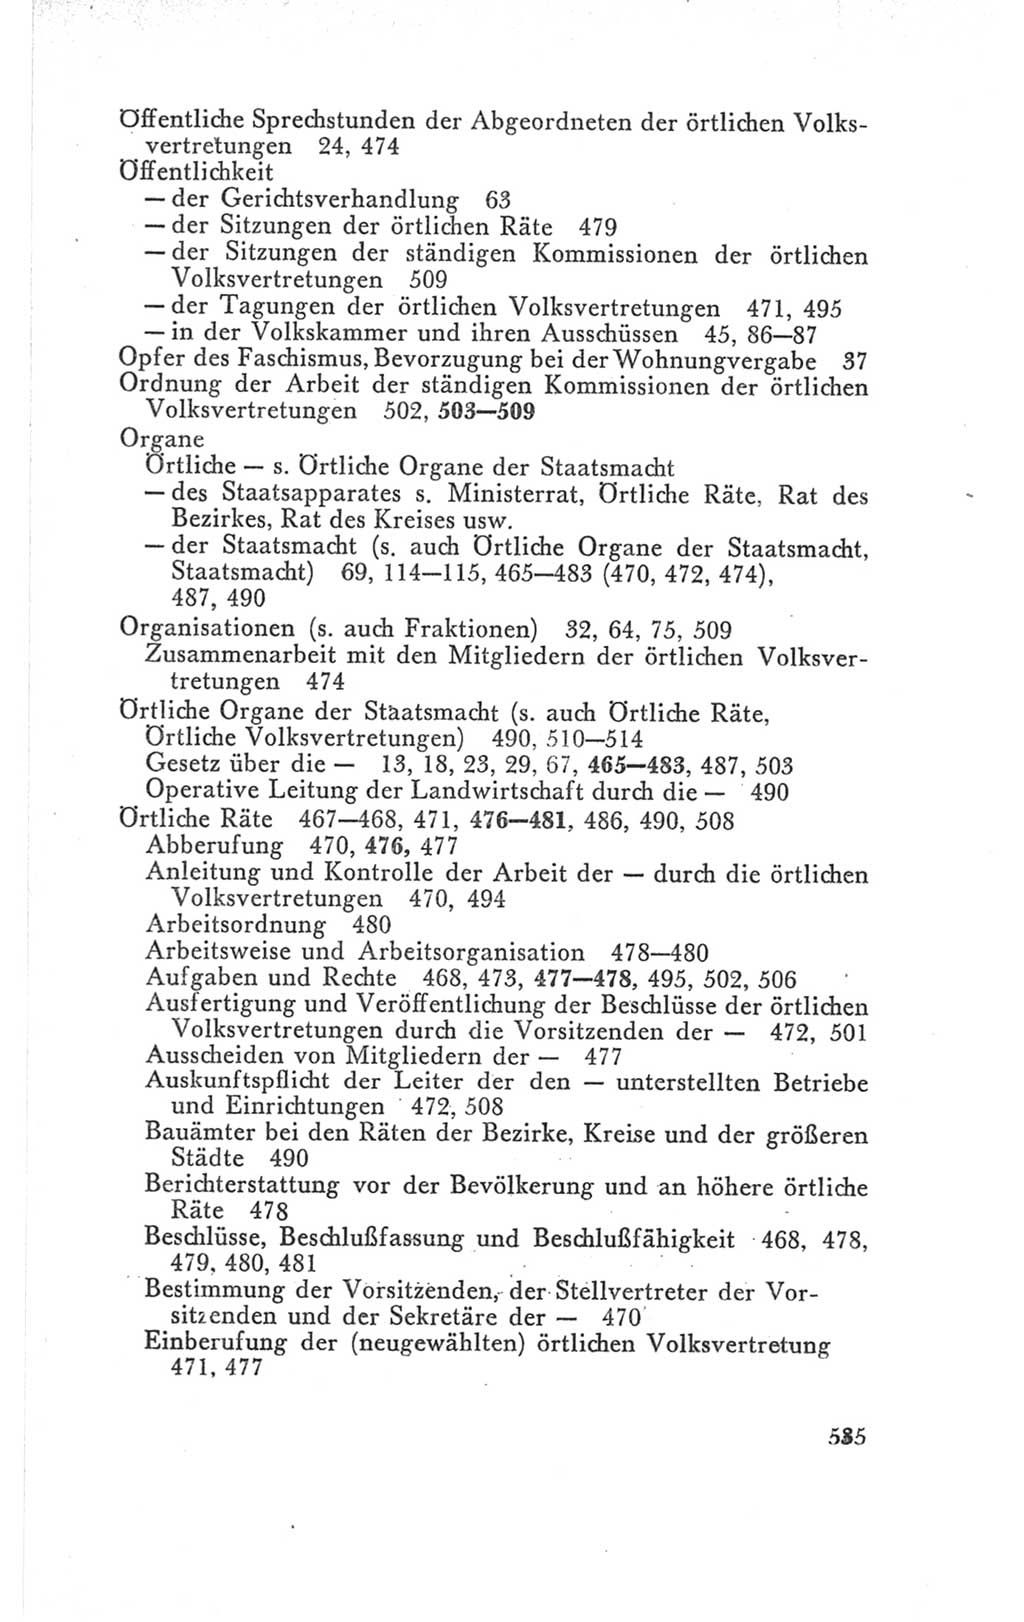 Handbuch der Volkskammer (VK) der Deutschen Demokratischen Republik (DDR), 3. Wahlperiode 1958-1963, Seite 535 (Hdb. VK. DDR 3. WP. 1958-1963, S. 535)